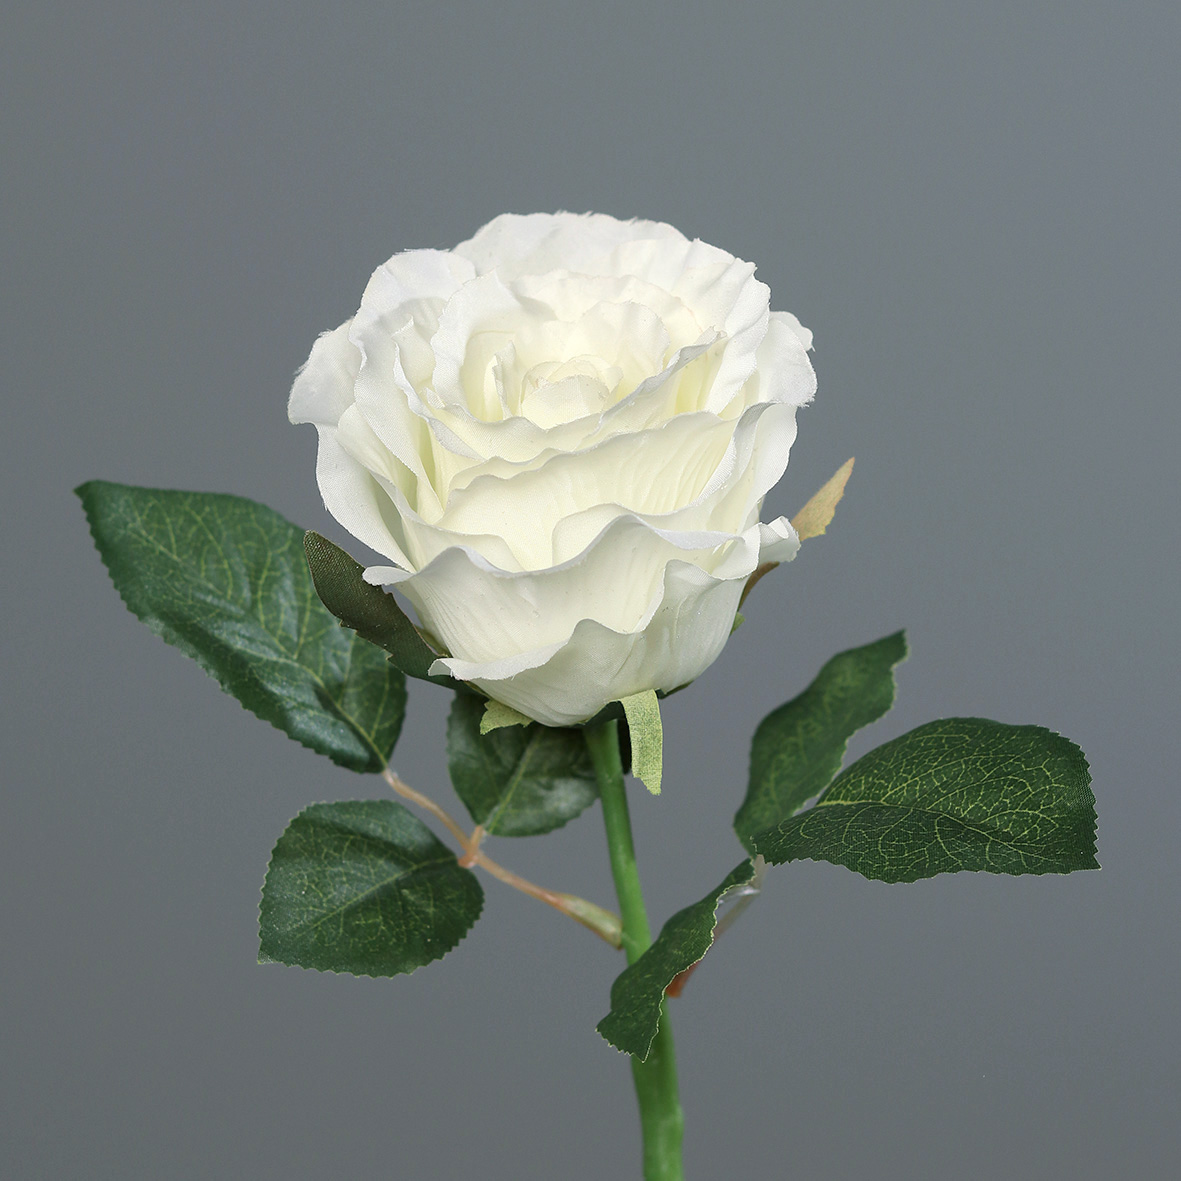 Rose 30cm weiß DP Kunstblumen künstliche Blumen